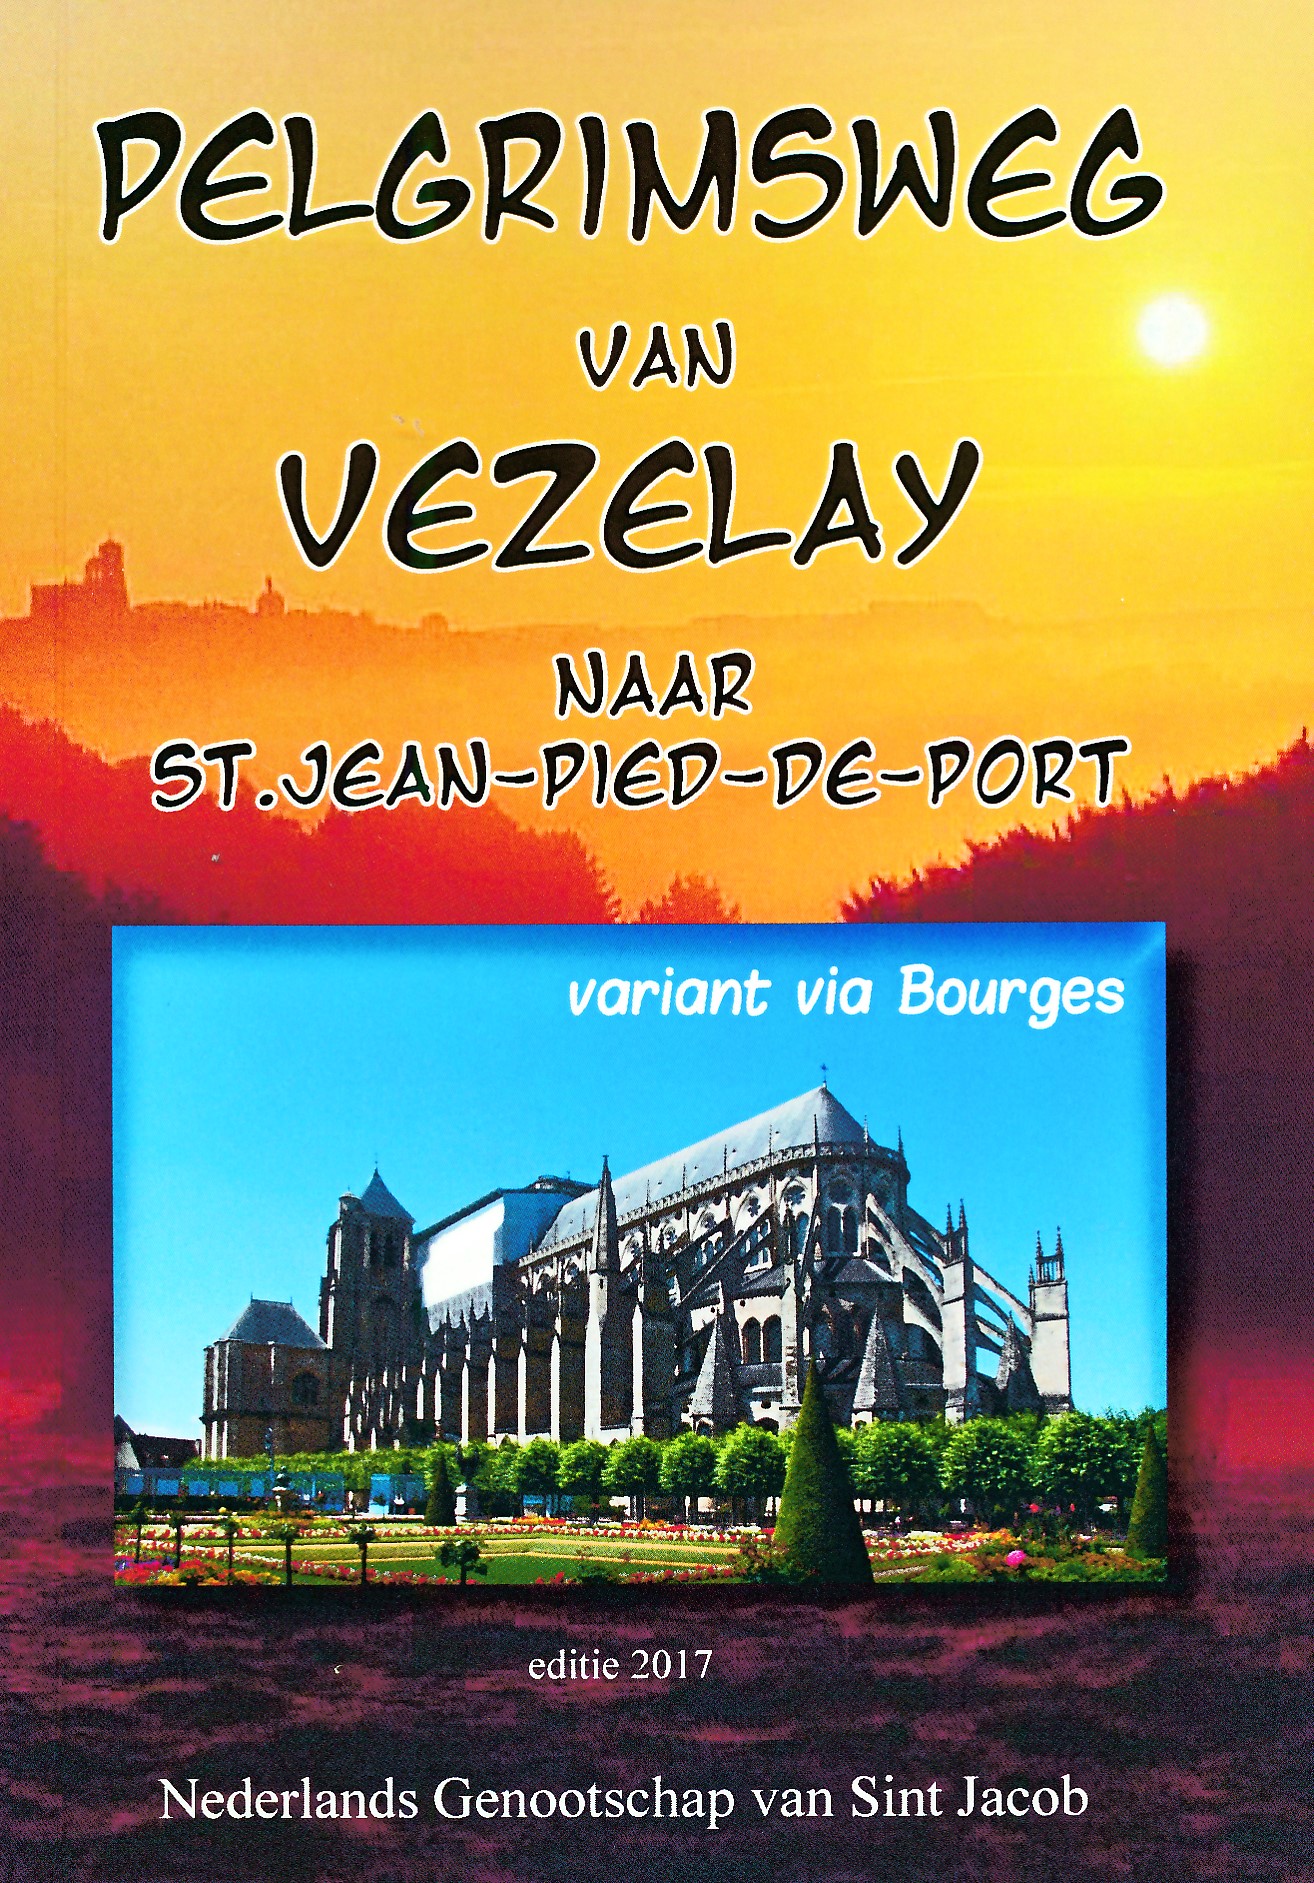 Online bestellen: Wandelgids Pelgrimsweg van Vezelay naar St.Jean-pied-de-Port via Bourges | Nederlands Genootschap van Sint Jacob